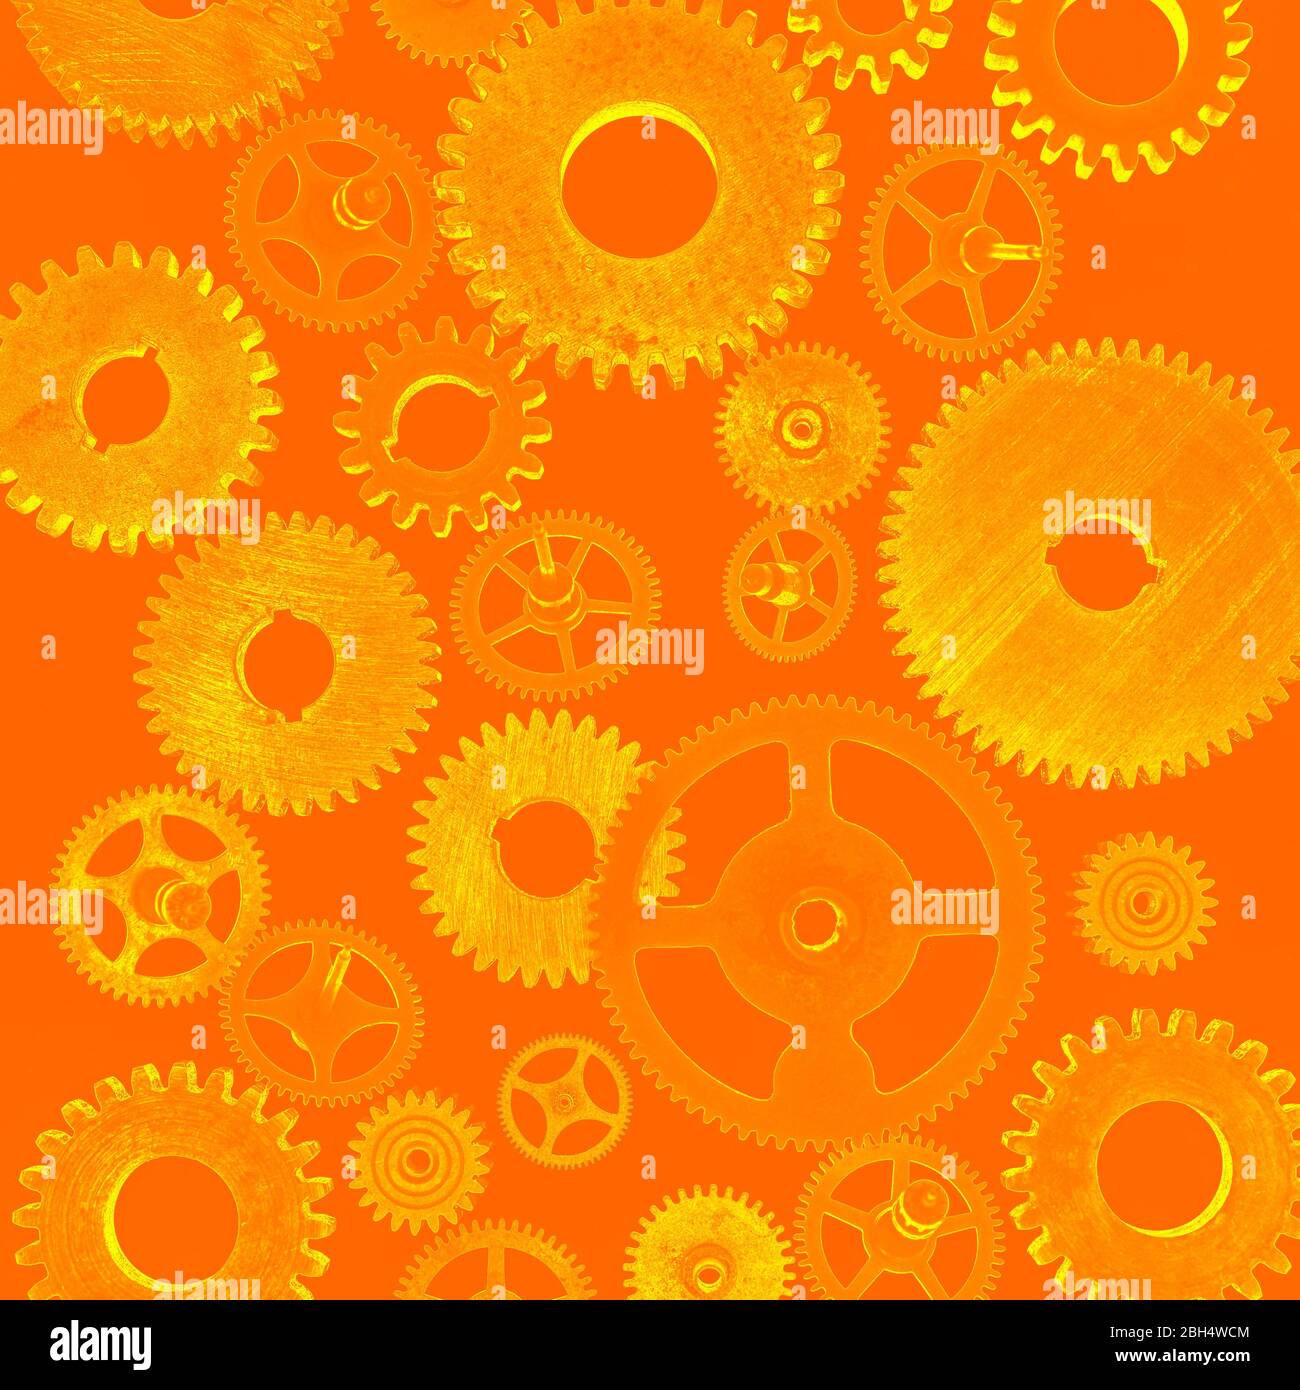 Illustration of cogs on orange background Stock Photo